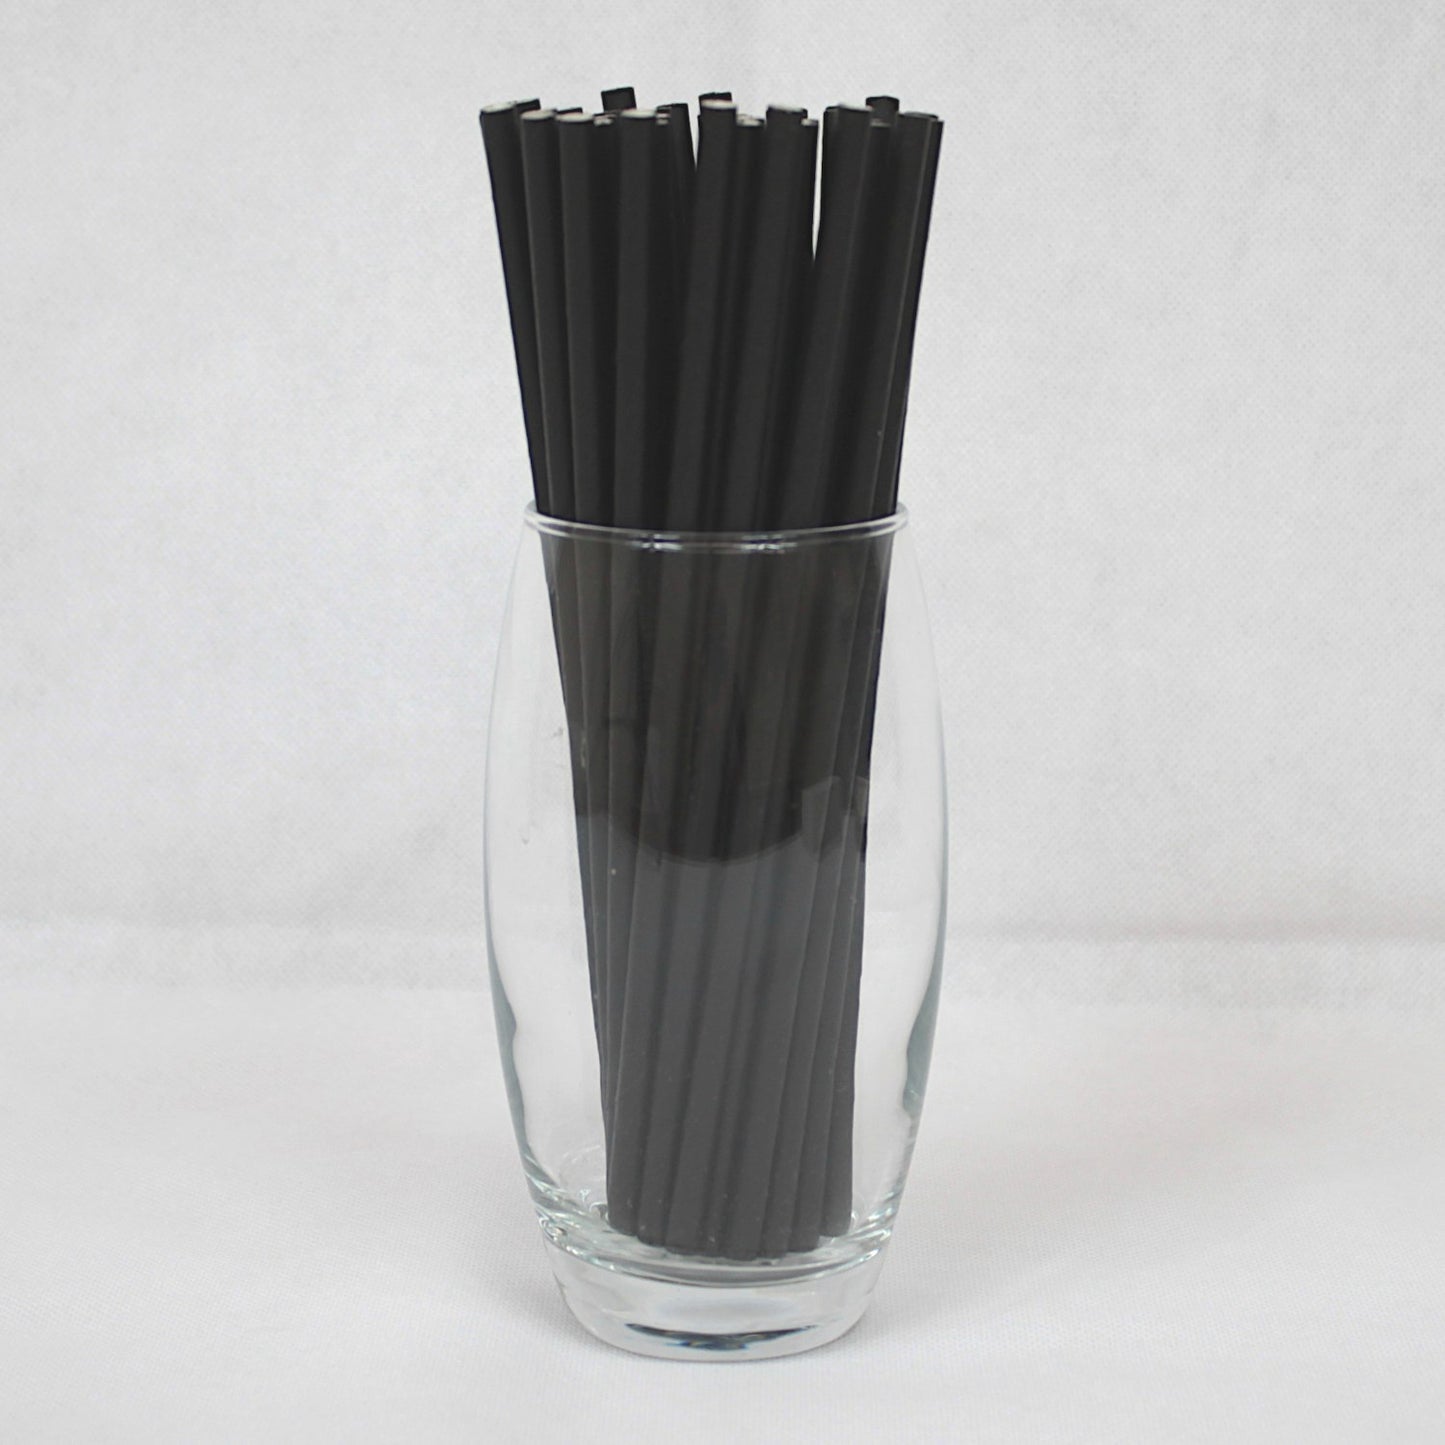 Black Paper Straws (6mm x 200mm) - Intrinsic Paper Straws